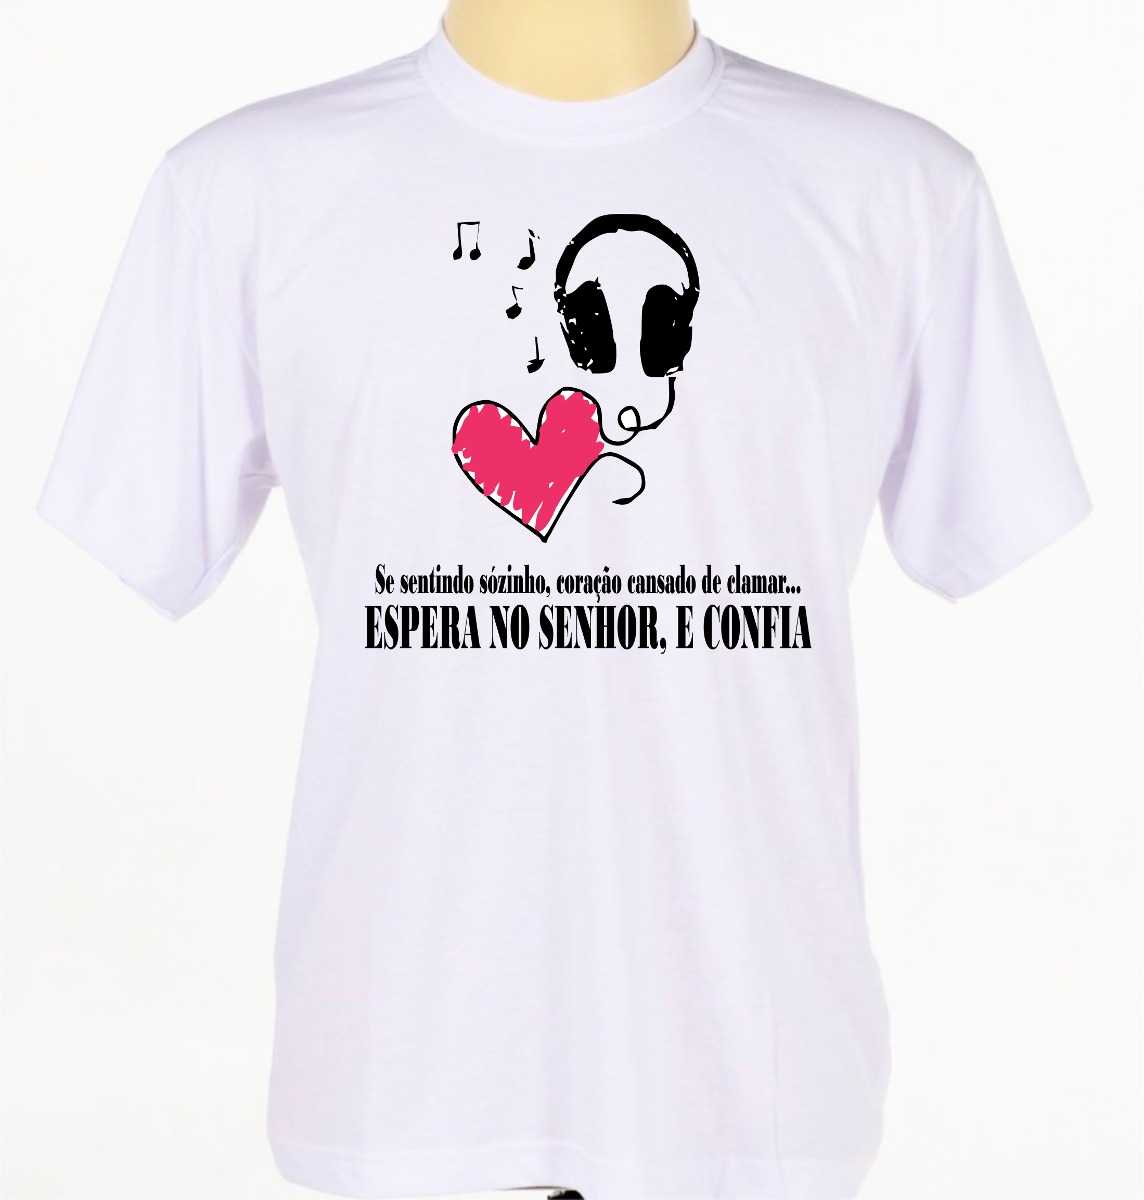 Camisa Camiseta Gospel Crist£ Evangélica Frases Jesus Deus R$ 25 02 em Mercado Livre